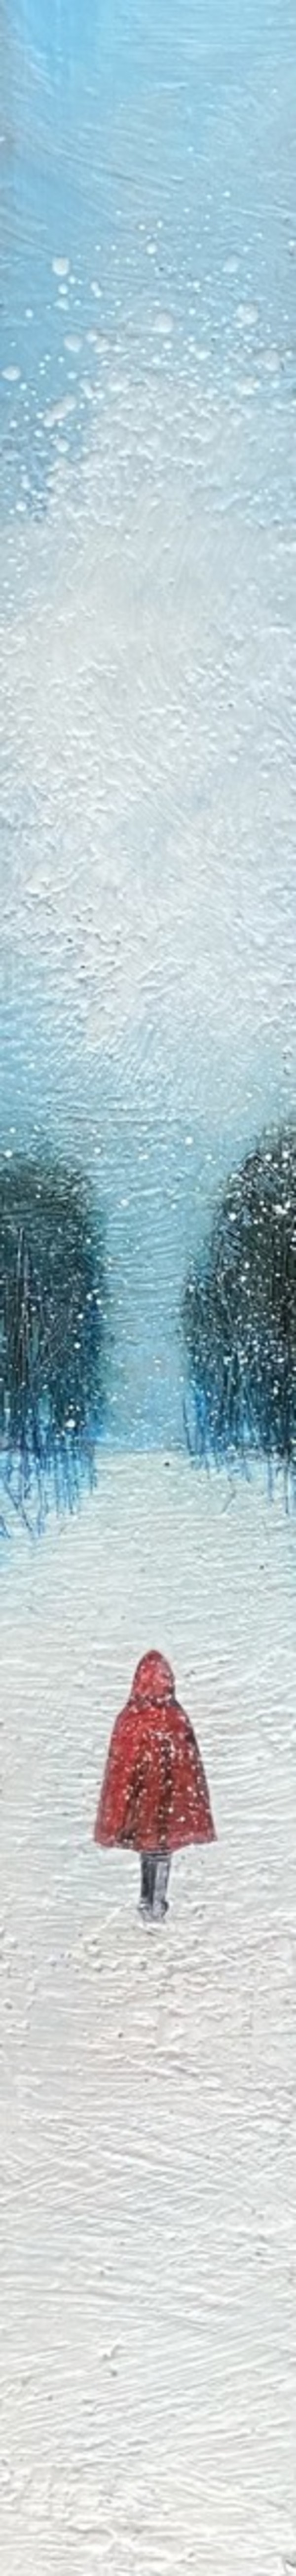 Blue Winter's Walk by Susan  Wallis